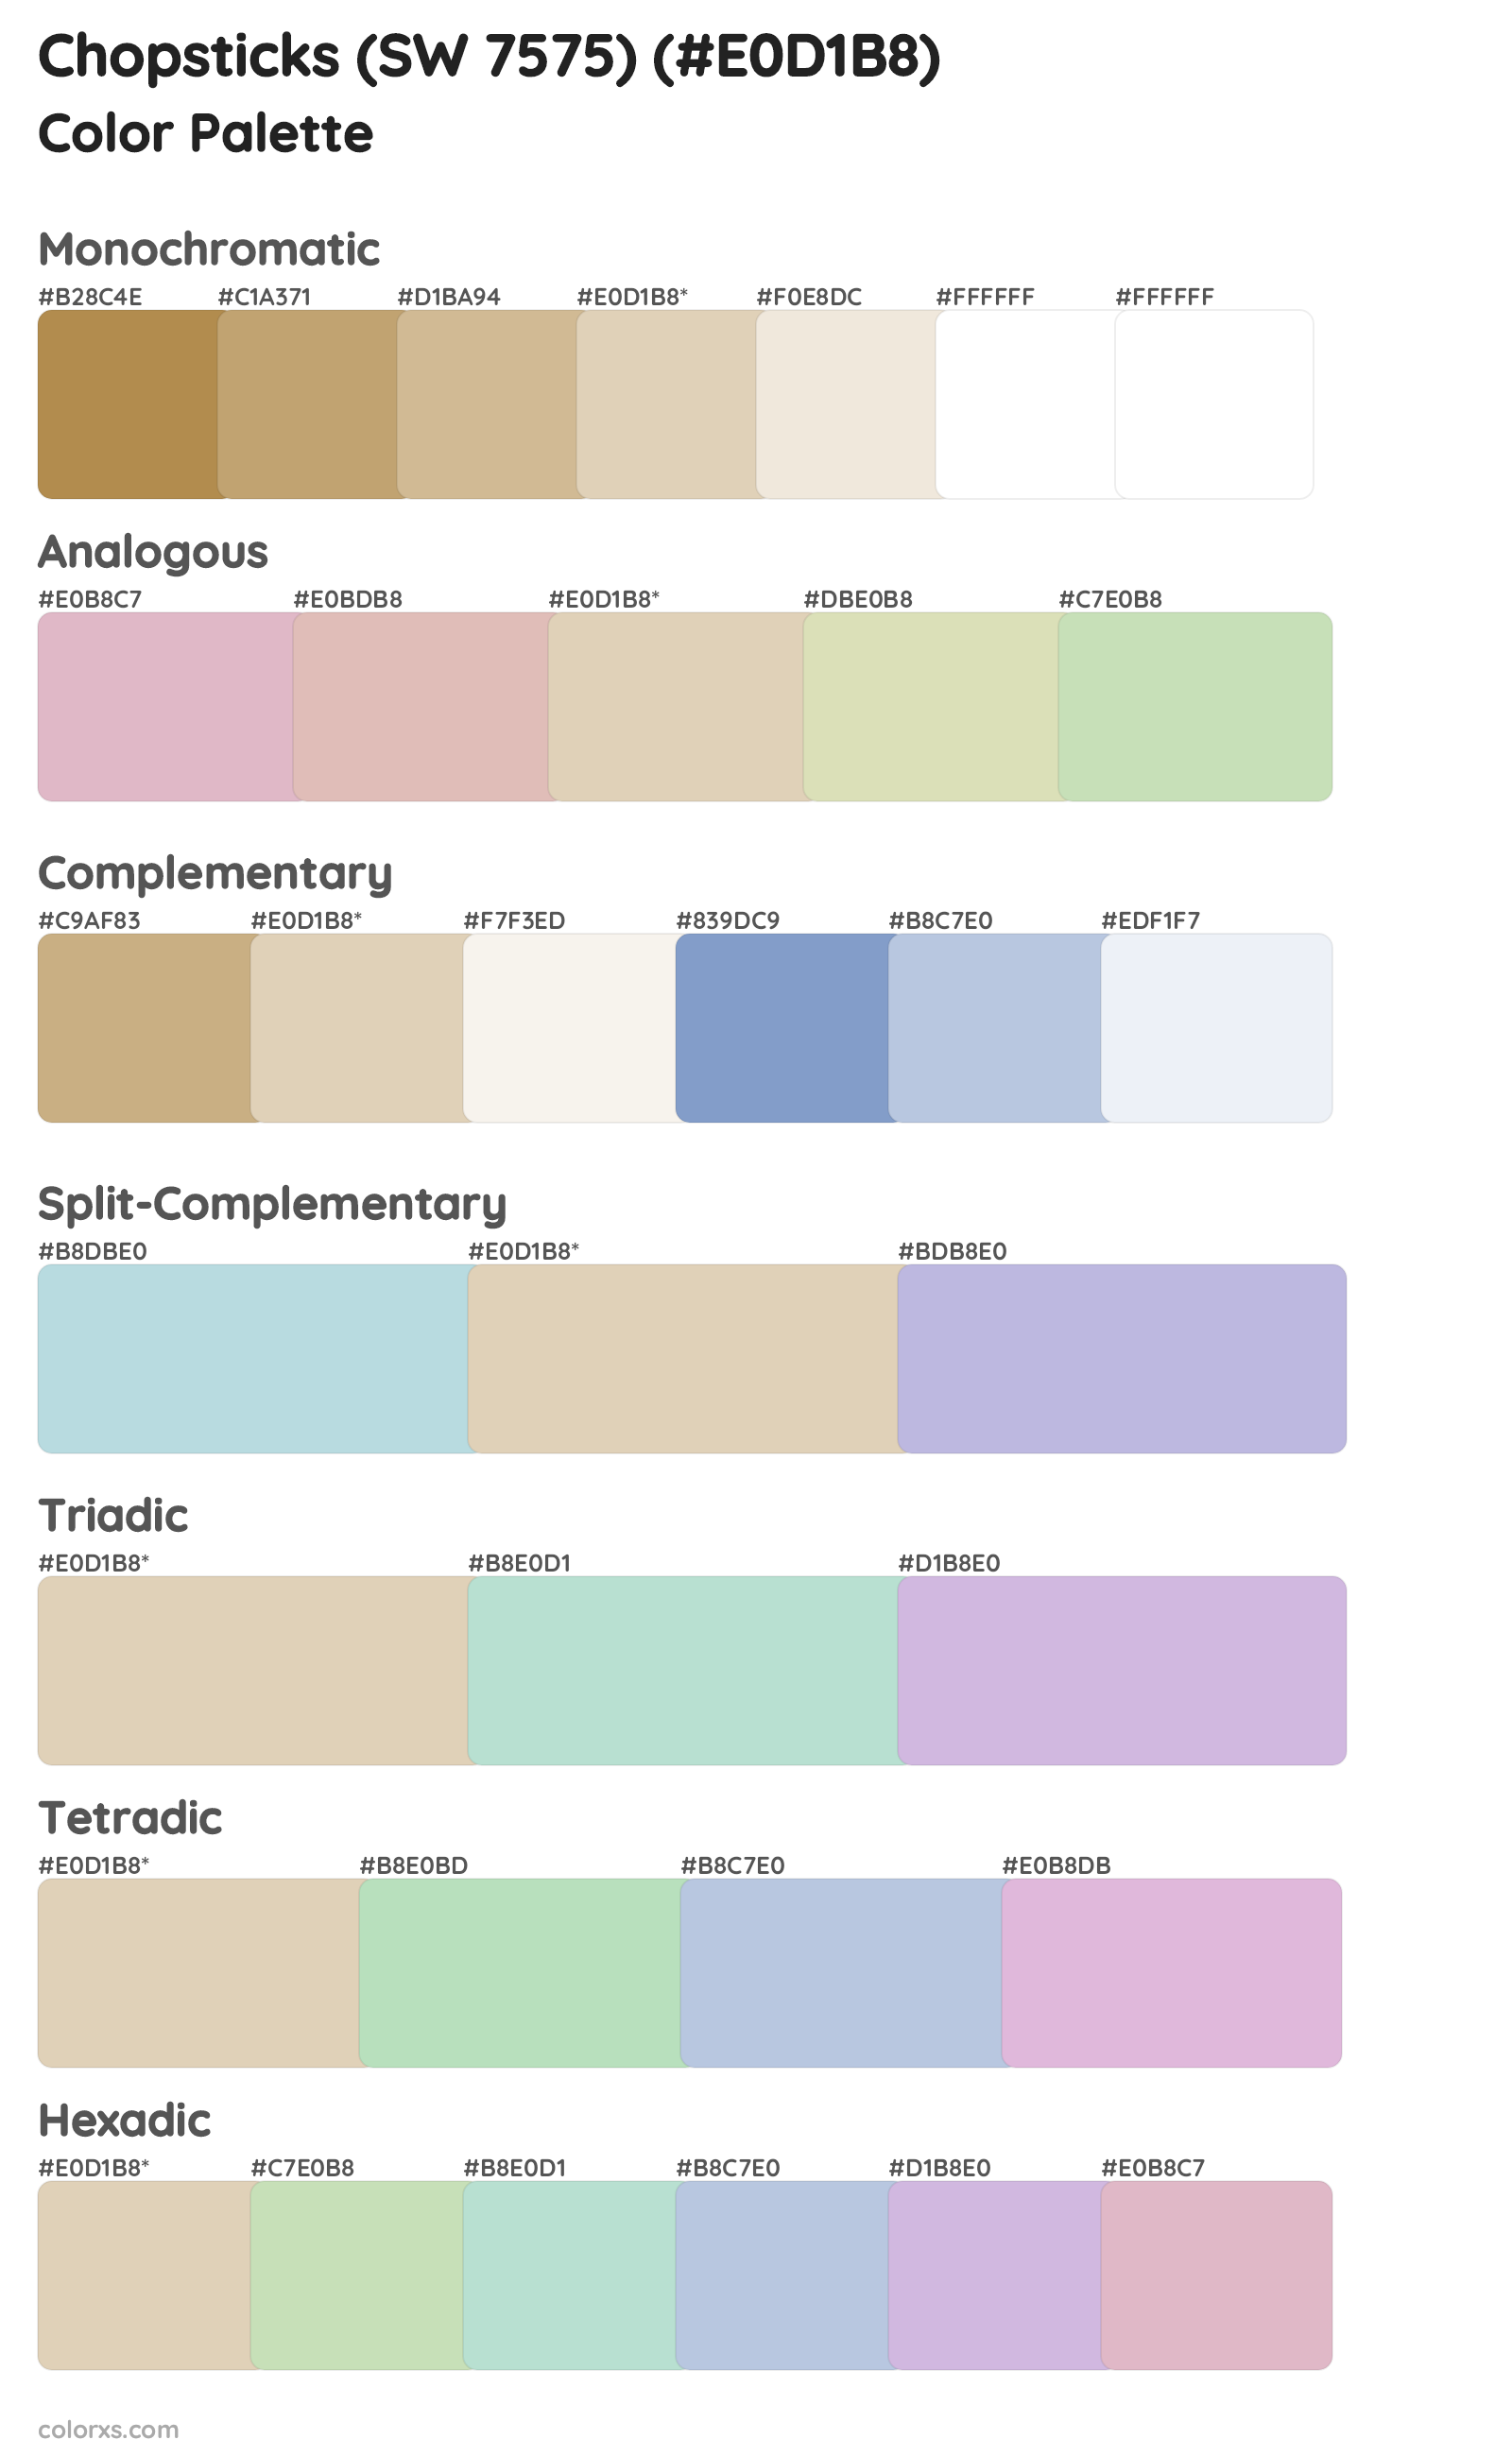 Chopsticks (SW 7575) Color Scheme Palettes